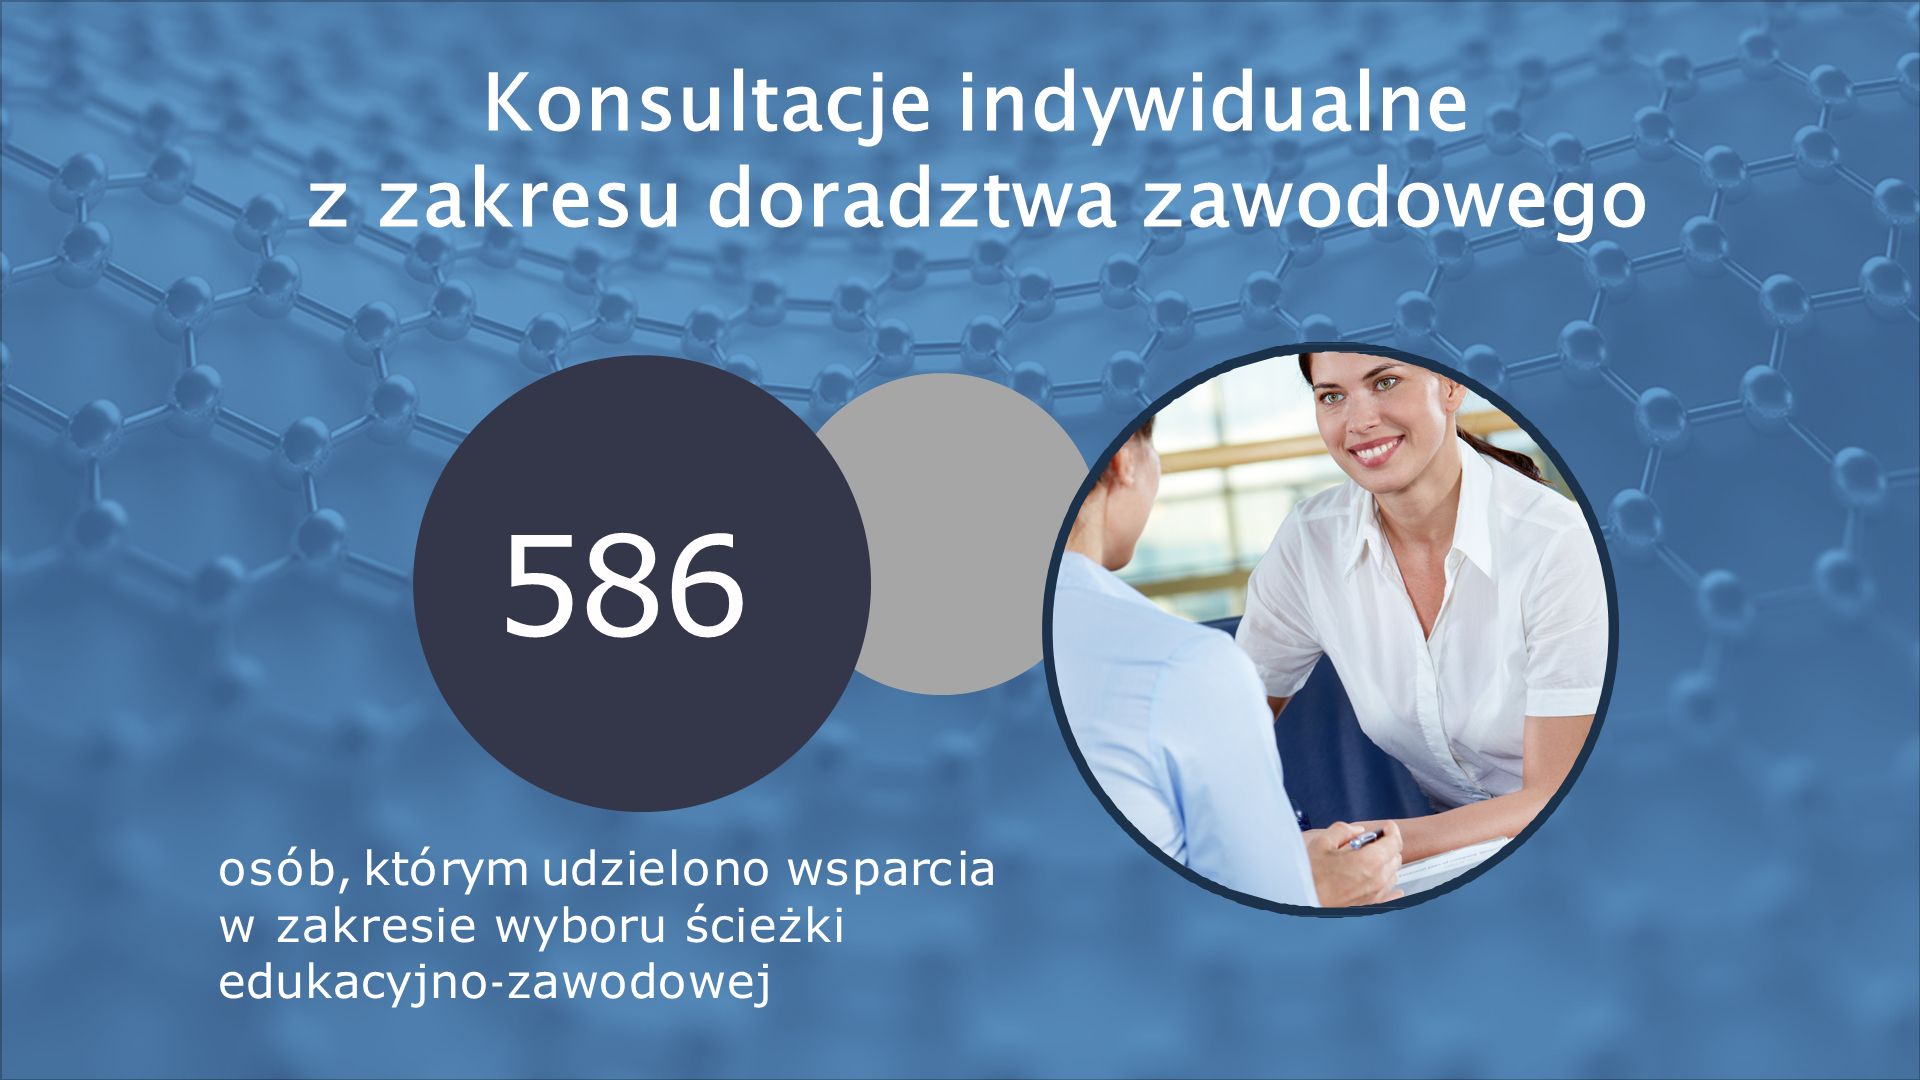 Działania CWRKDiZ w Poznaniu 2017-2021 Slajd11